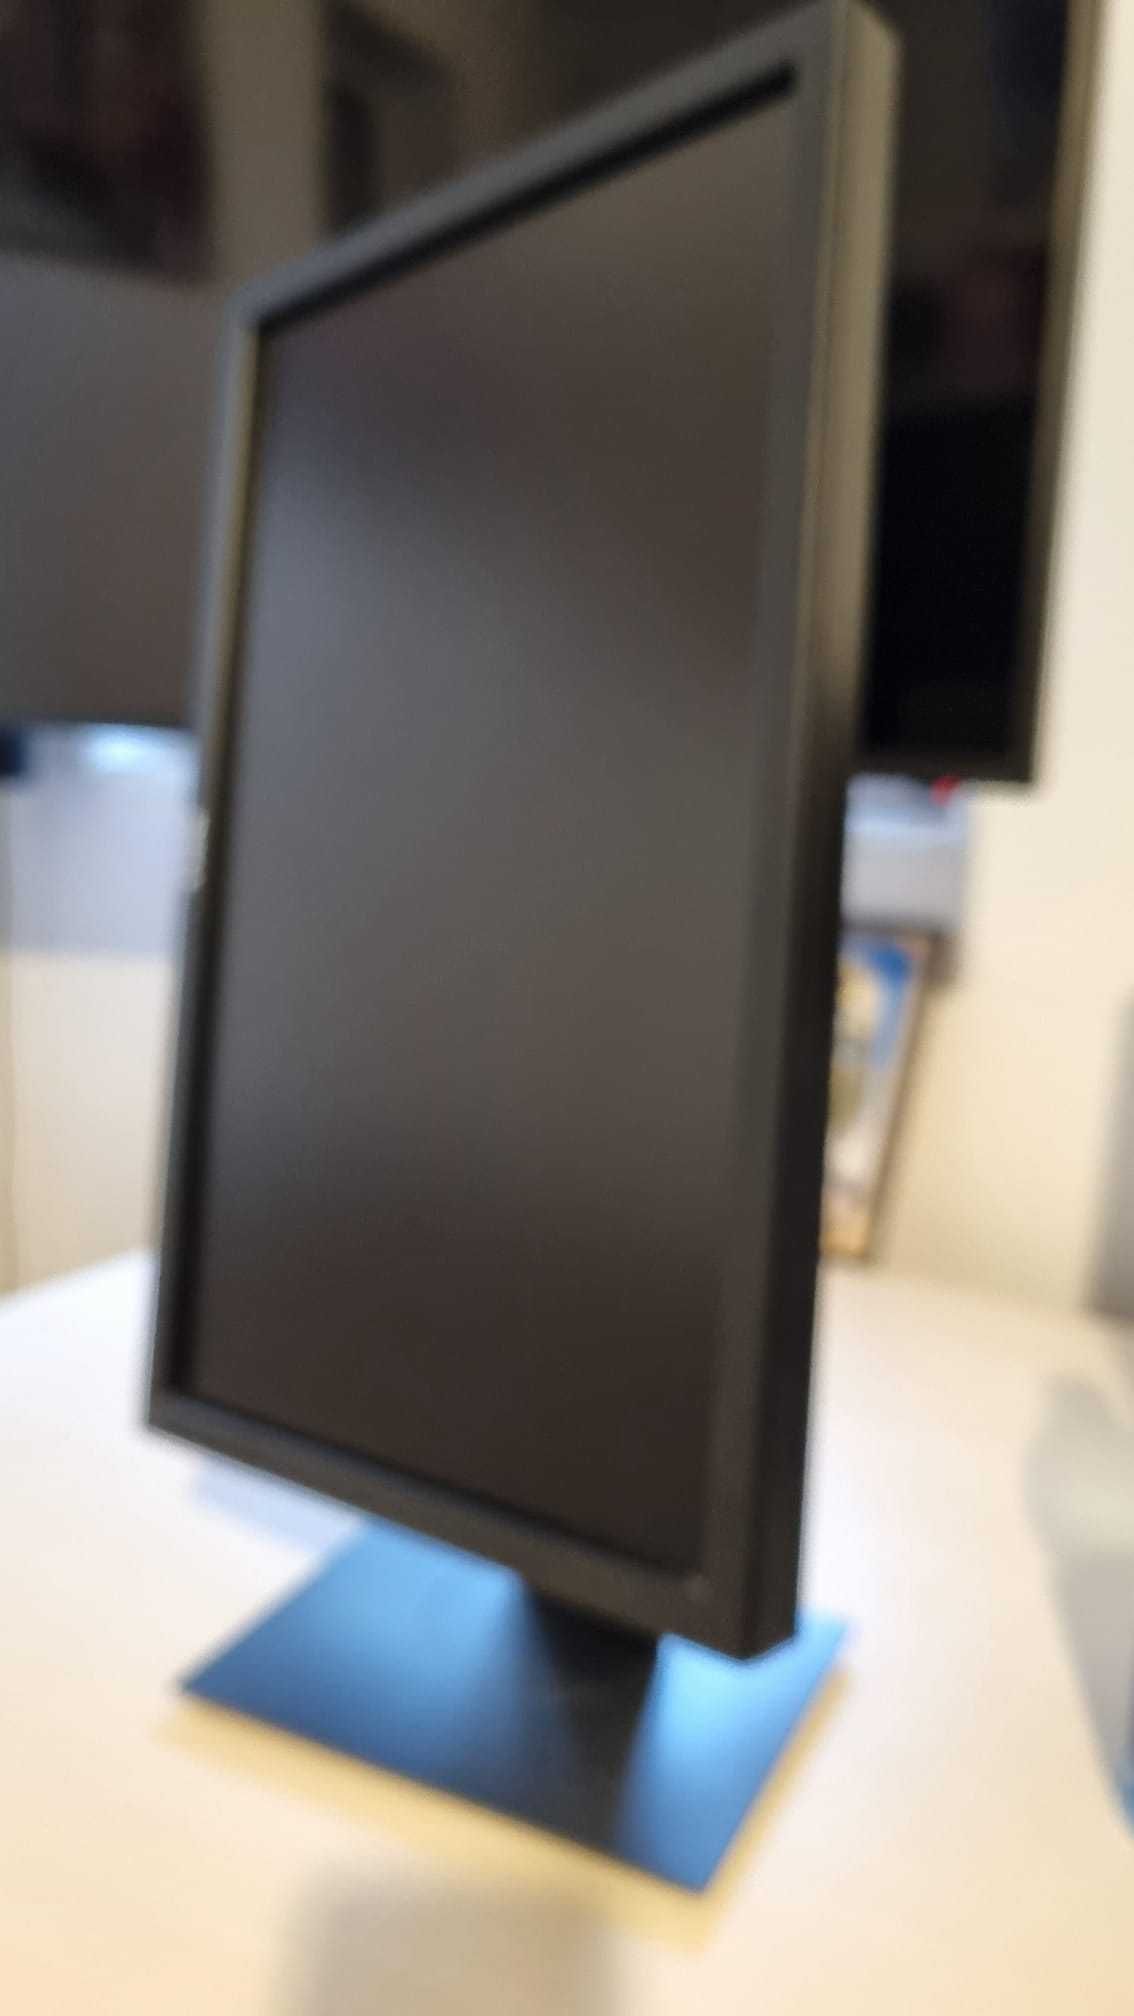 Monitor Dell IPS 19 inch stare perfecta(calitate).